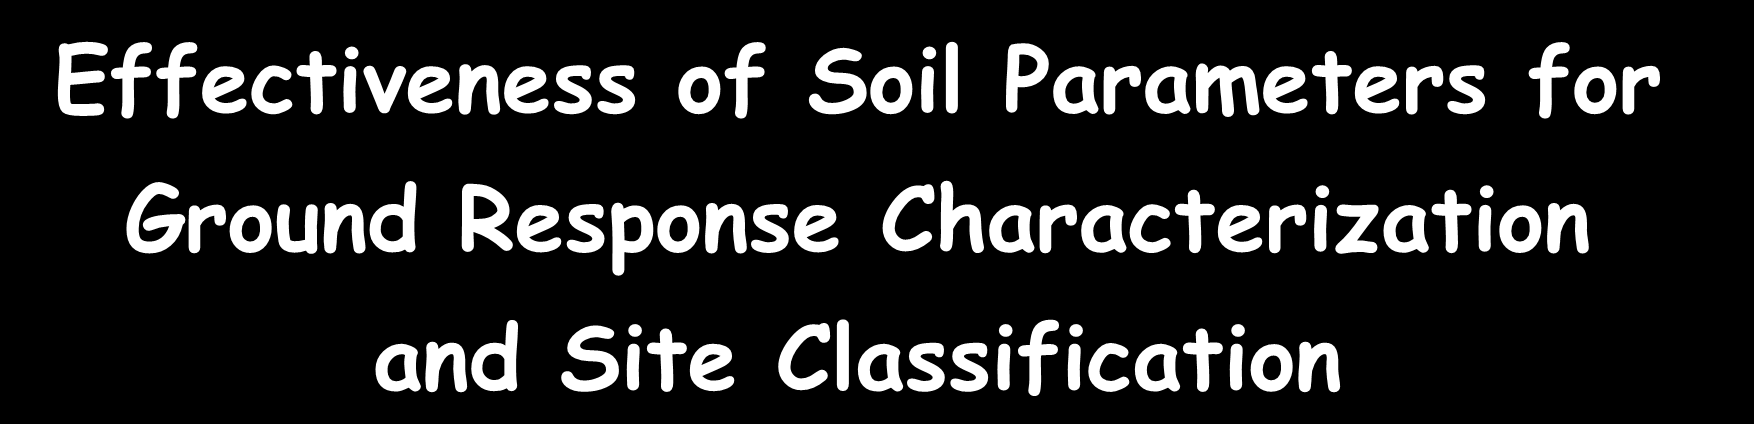 it Effectiveness of Soil Parameters for Ground Response Characterization and Site Classification Scopo del Lavoro: definizione del set di parametri più efficaci per la predizione dell